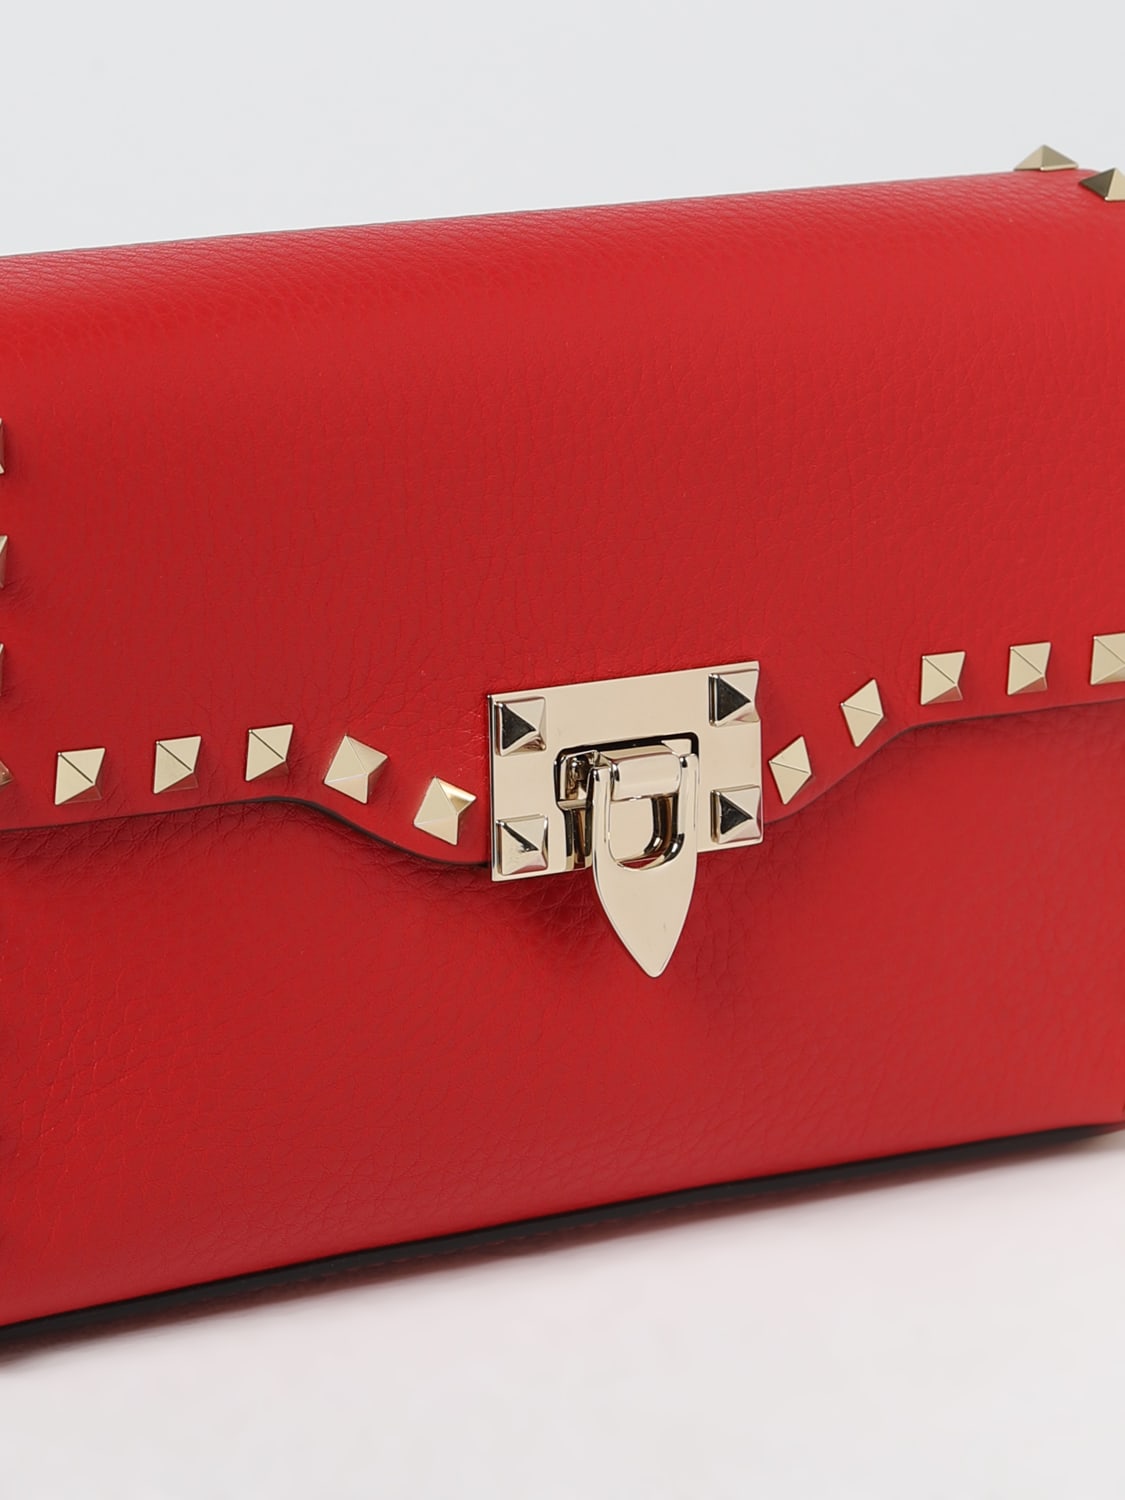 Valentino Garavani Rockstud - Shoulder bag for Woman - Red